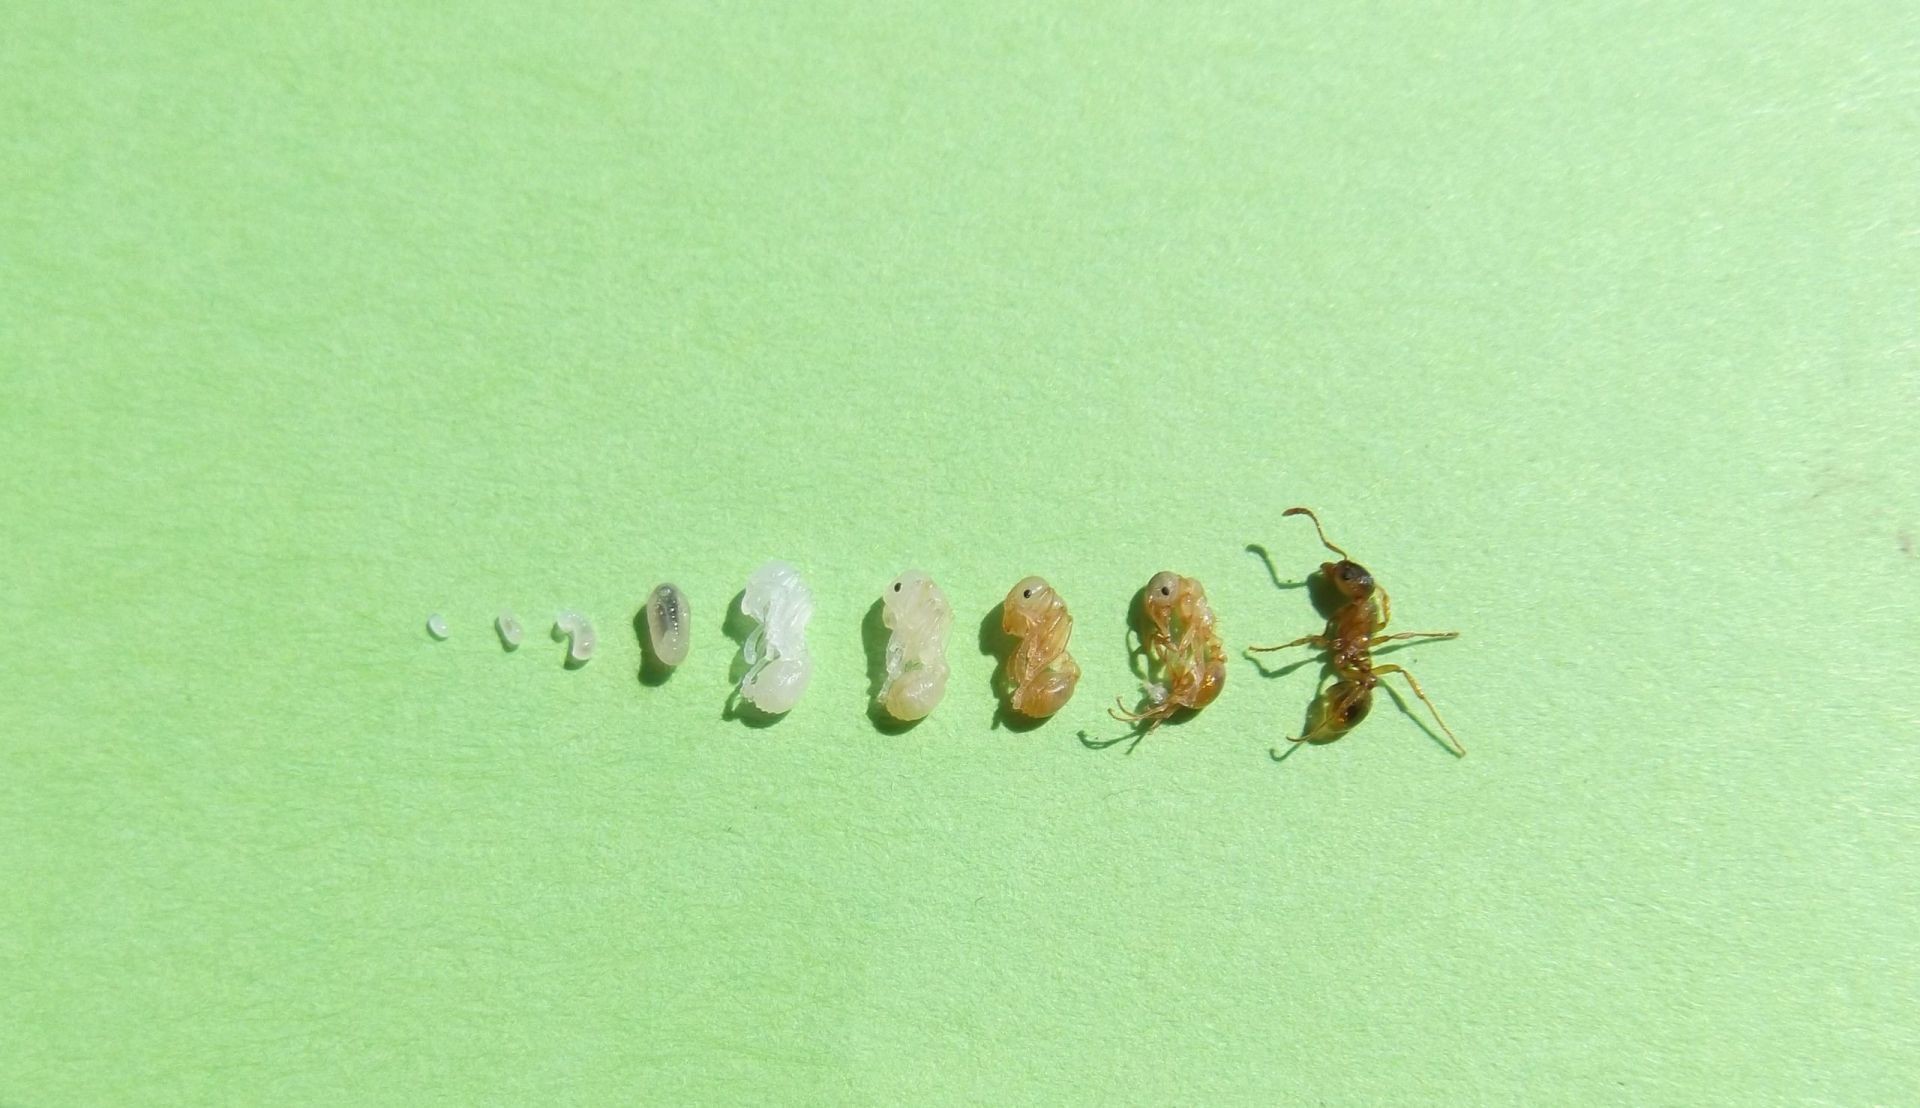 Cykl rozwojowy mrówek 